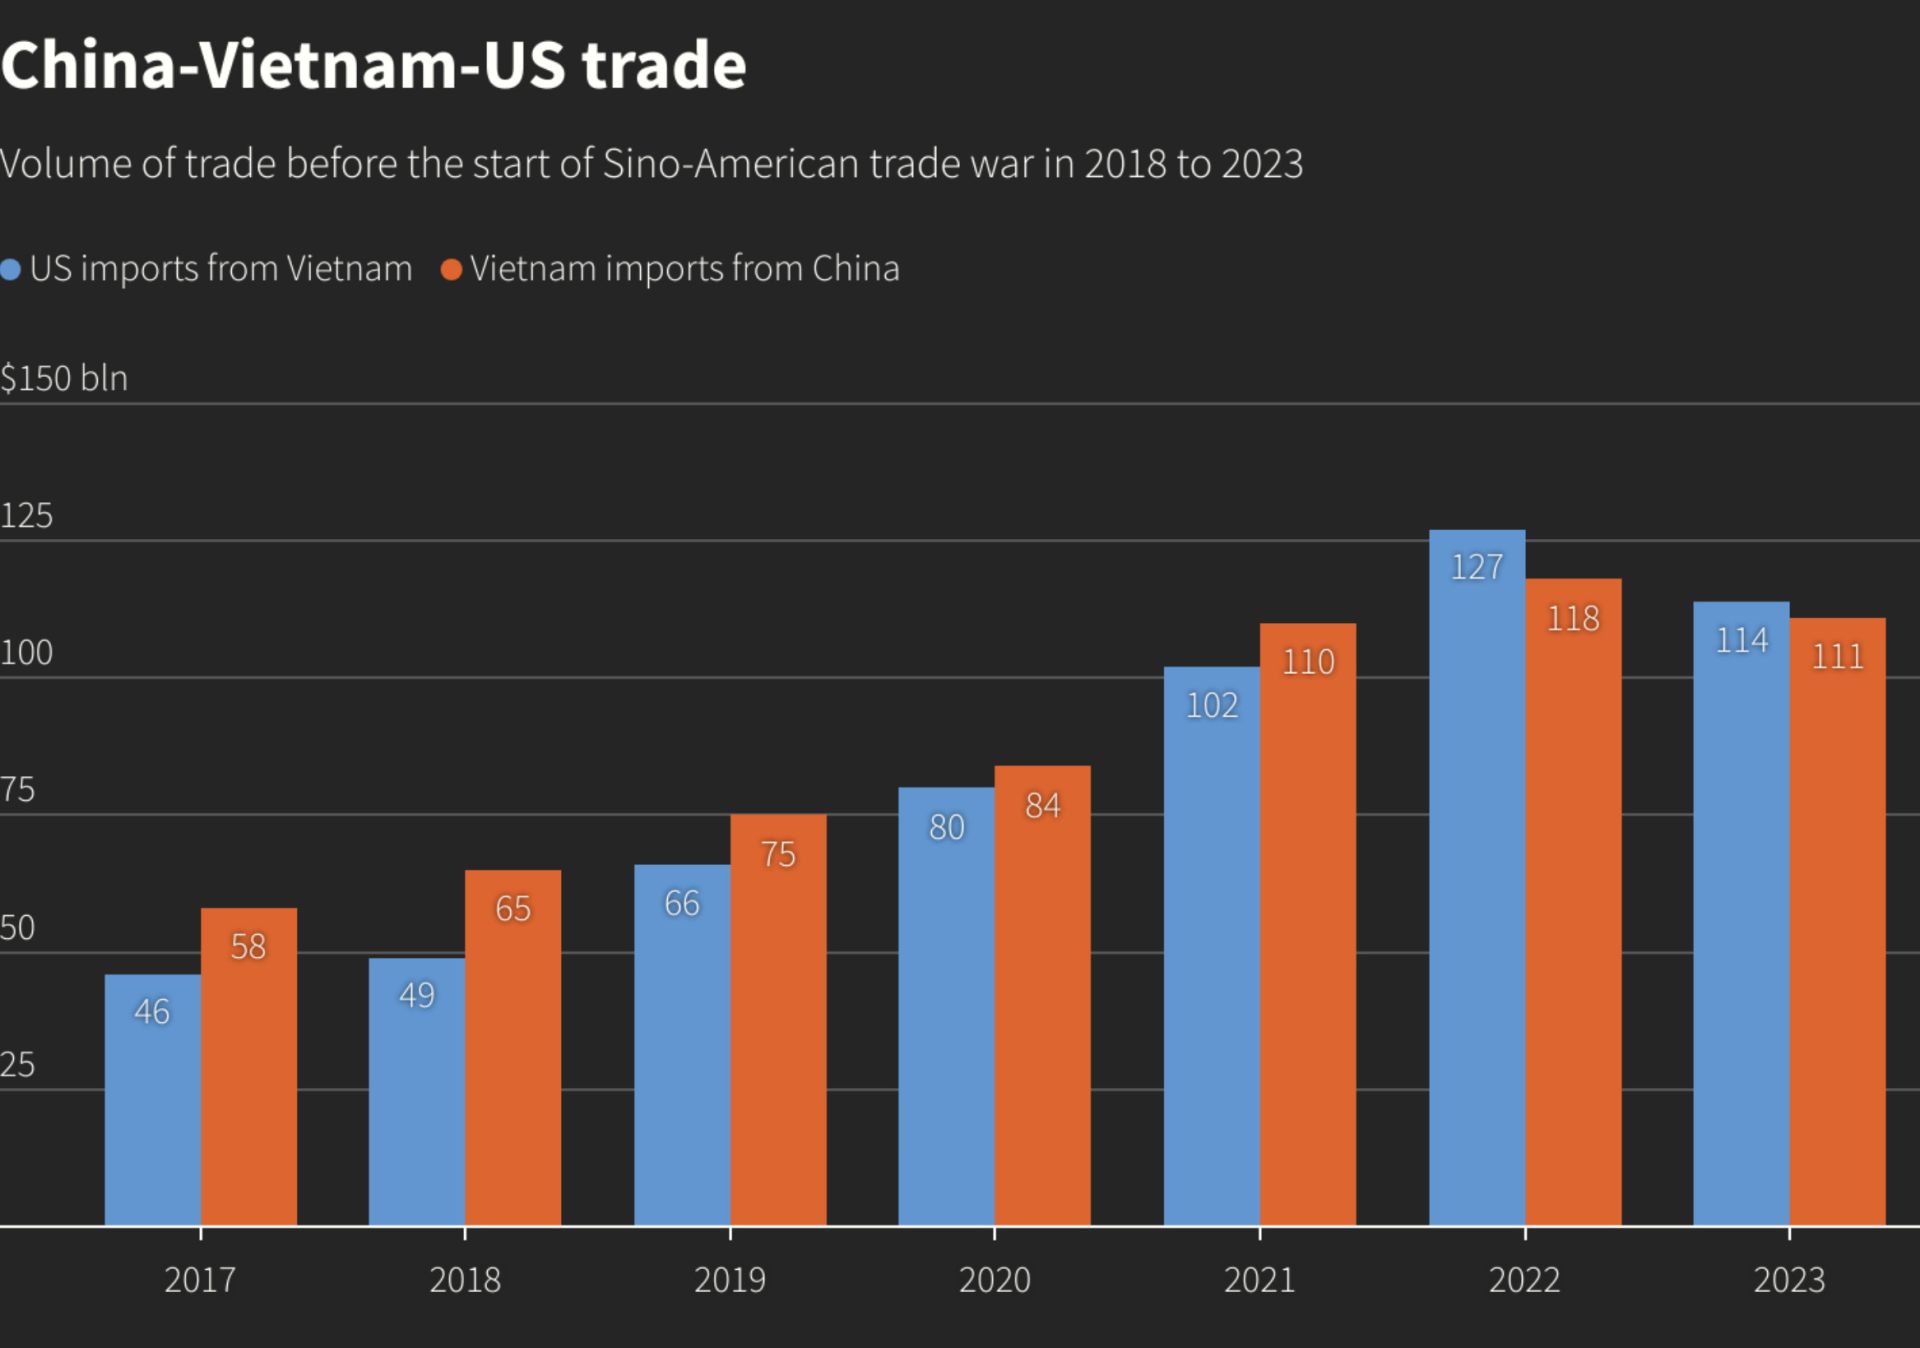 Tương quan khối lượng thương mại Trung - Việt - Mỹ giai đoạn 2017 - 2023
(màu xanh: nhập khẩu của Hoa Kỳ từ Việt Nam; màu cam: nhập khẩu của Việt Nam từ Trung Quốc) (đơn vị: tỷ USD)